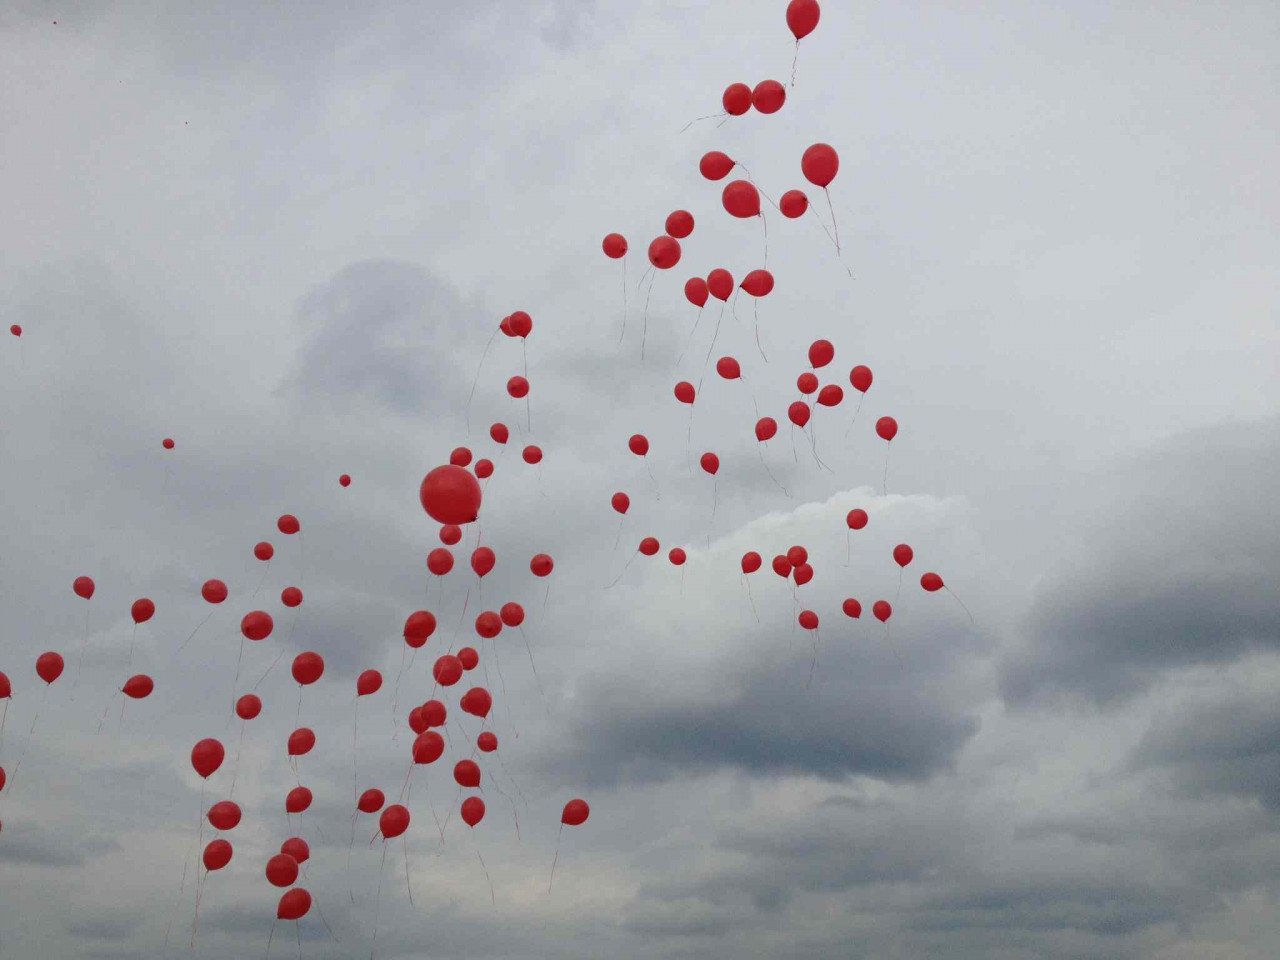 http://www.lifo.gr/uploads/image/594711/Balloons_02.jpg